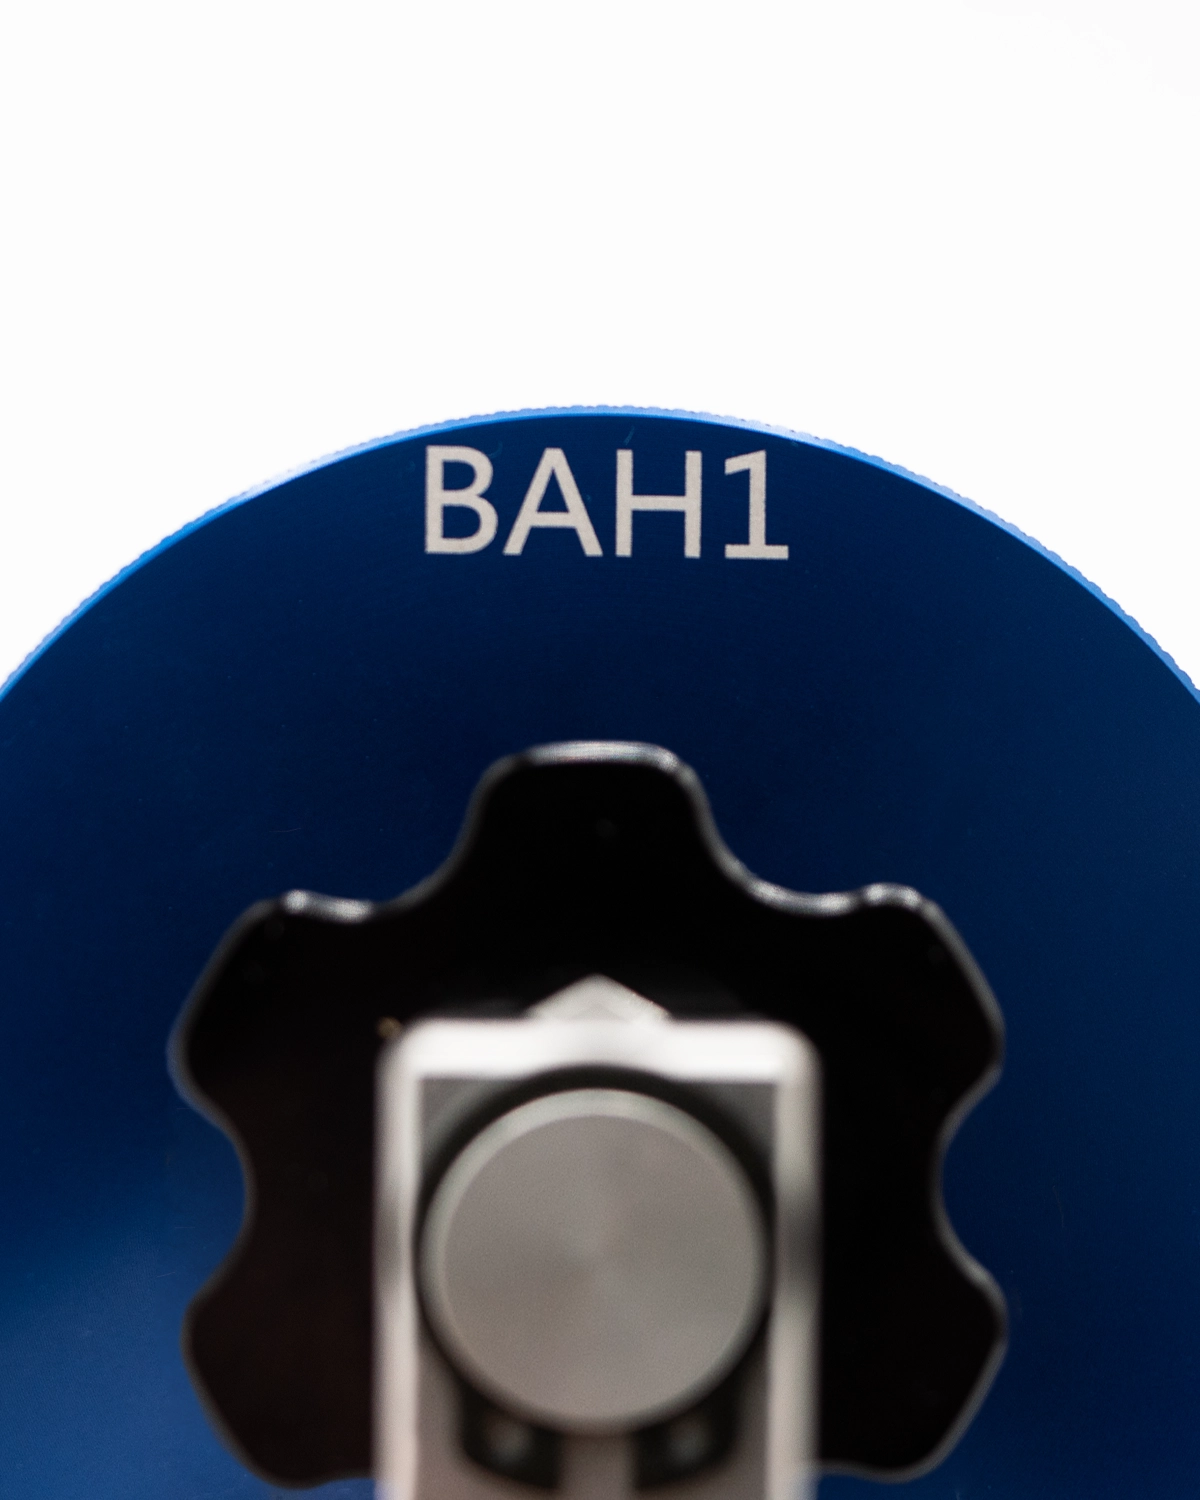 Honda Brake Adapter (BAH1)